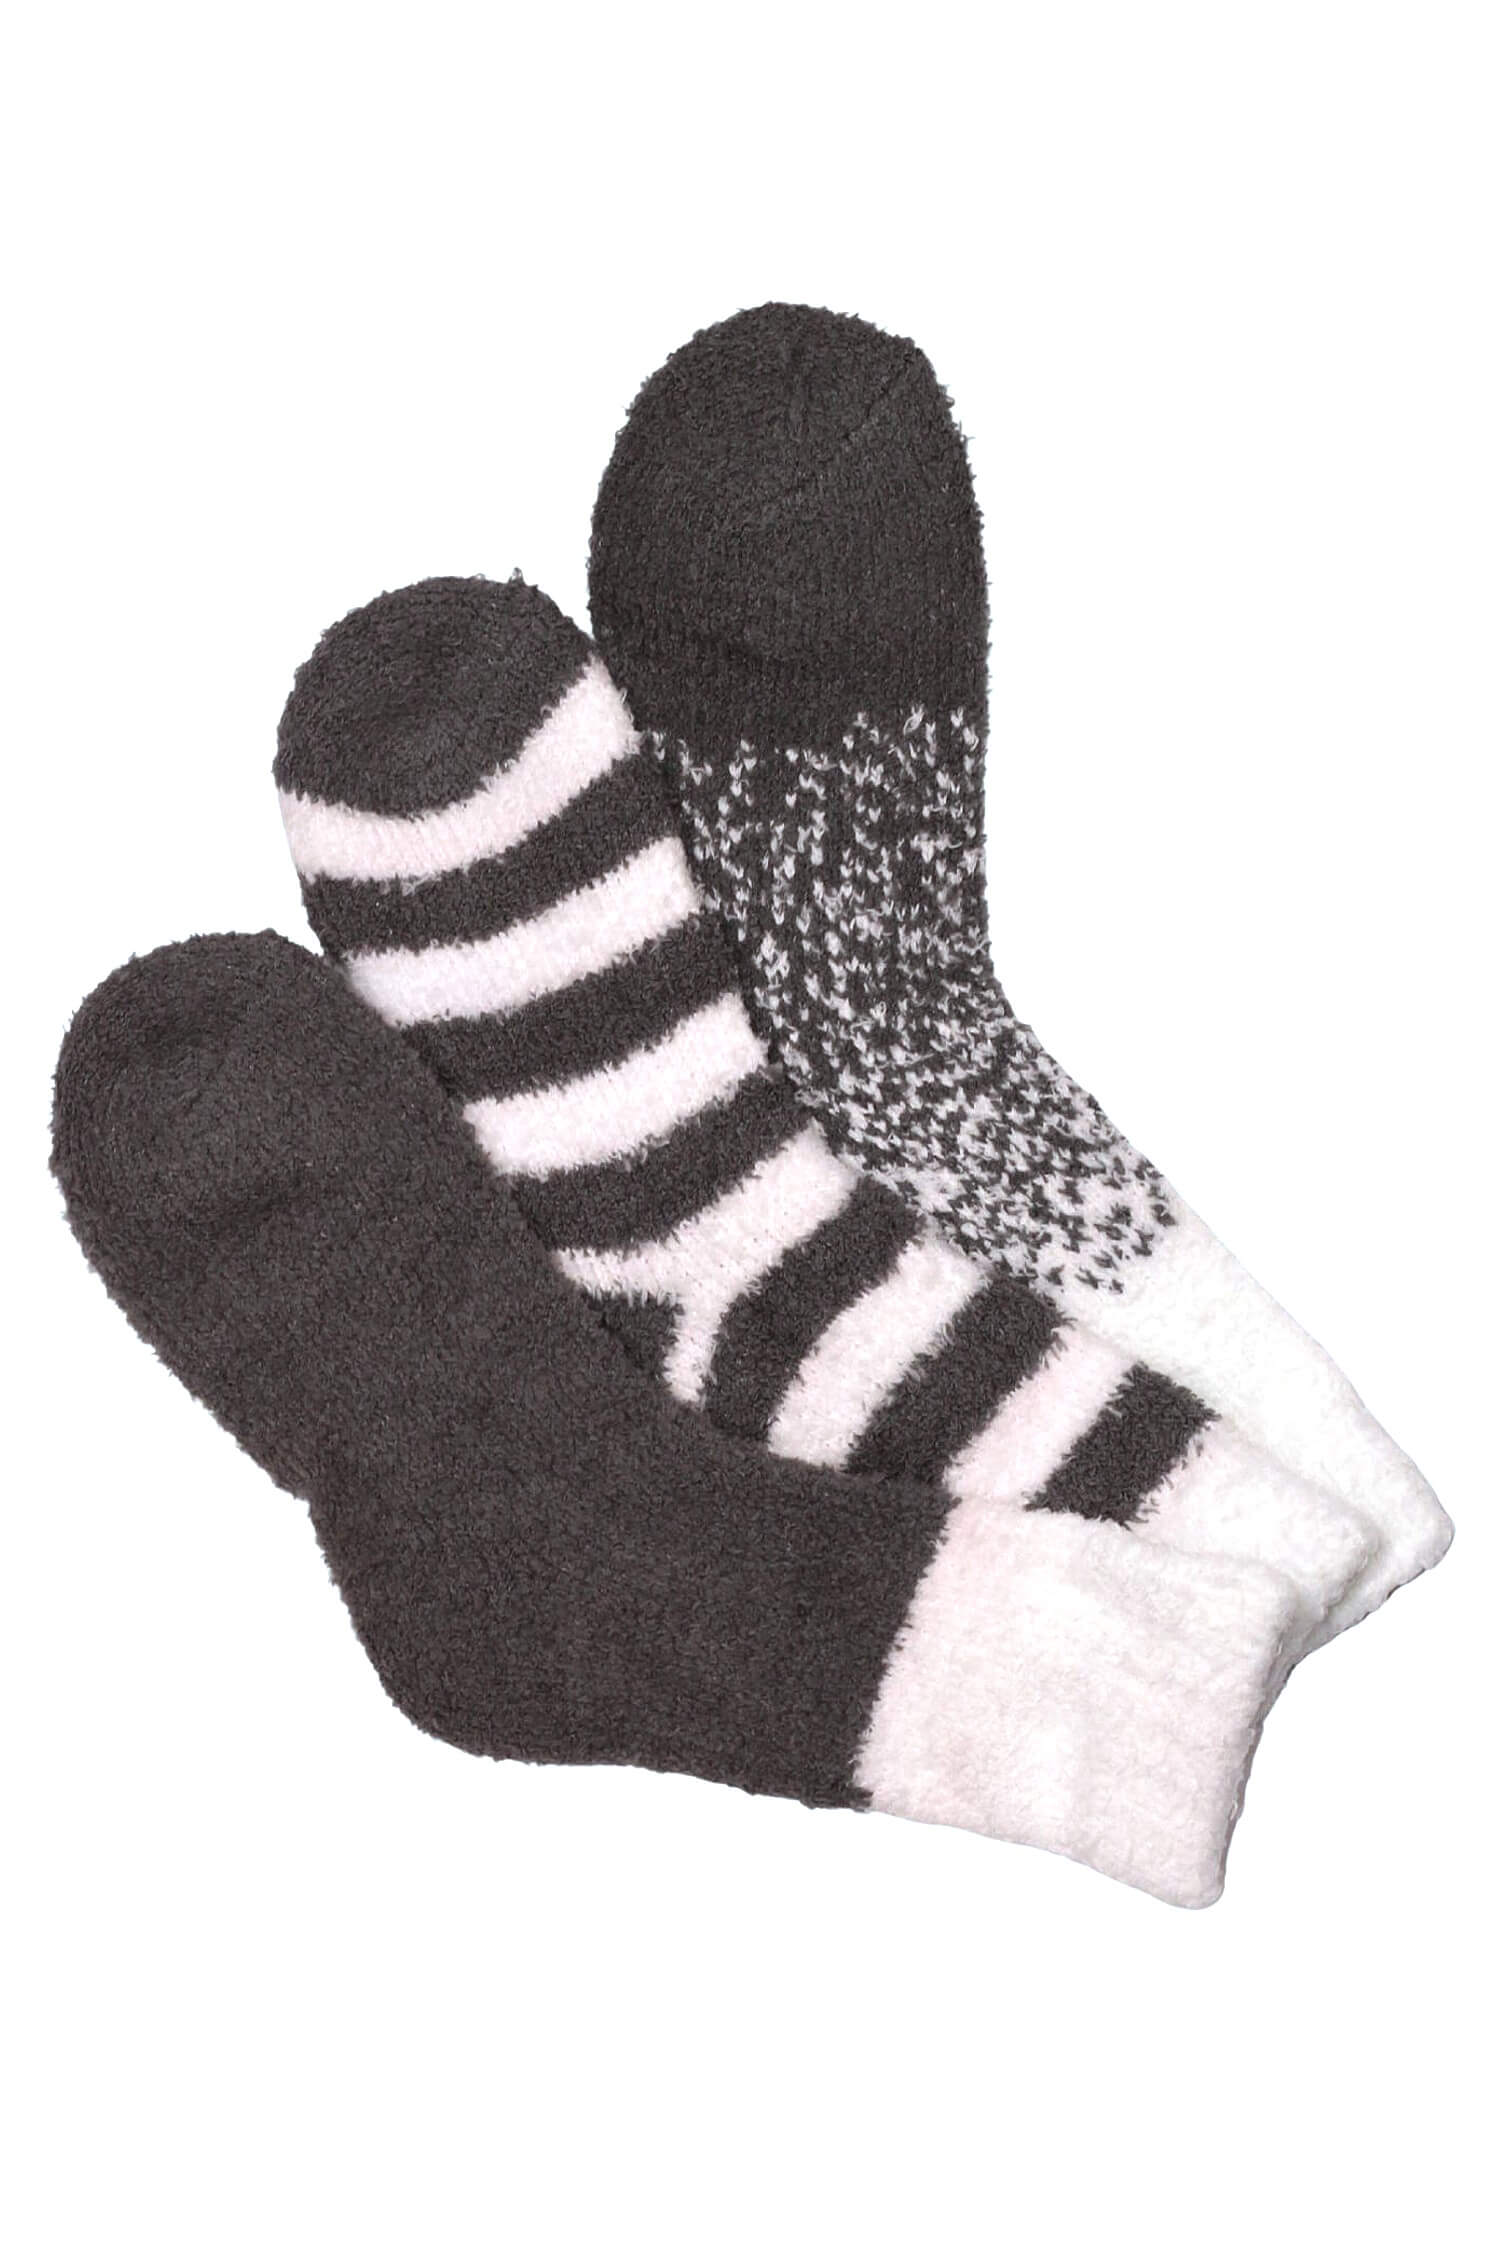 Emi Grey dámské žinylkové ponožky H5101B 39-42 šedá